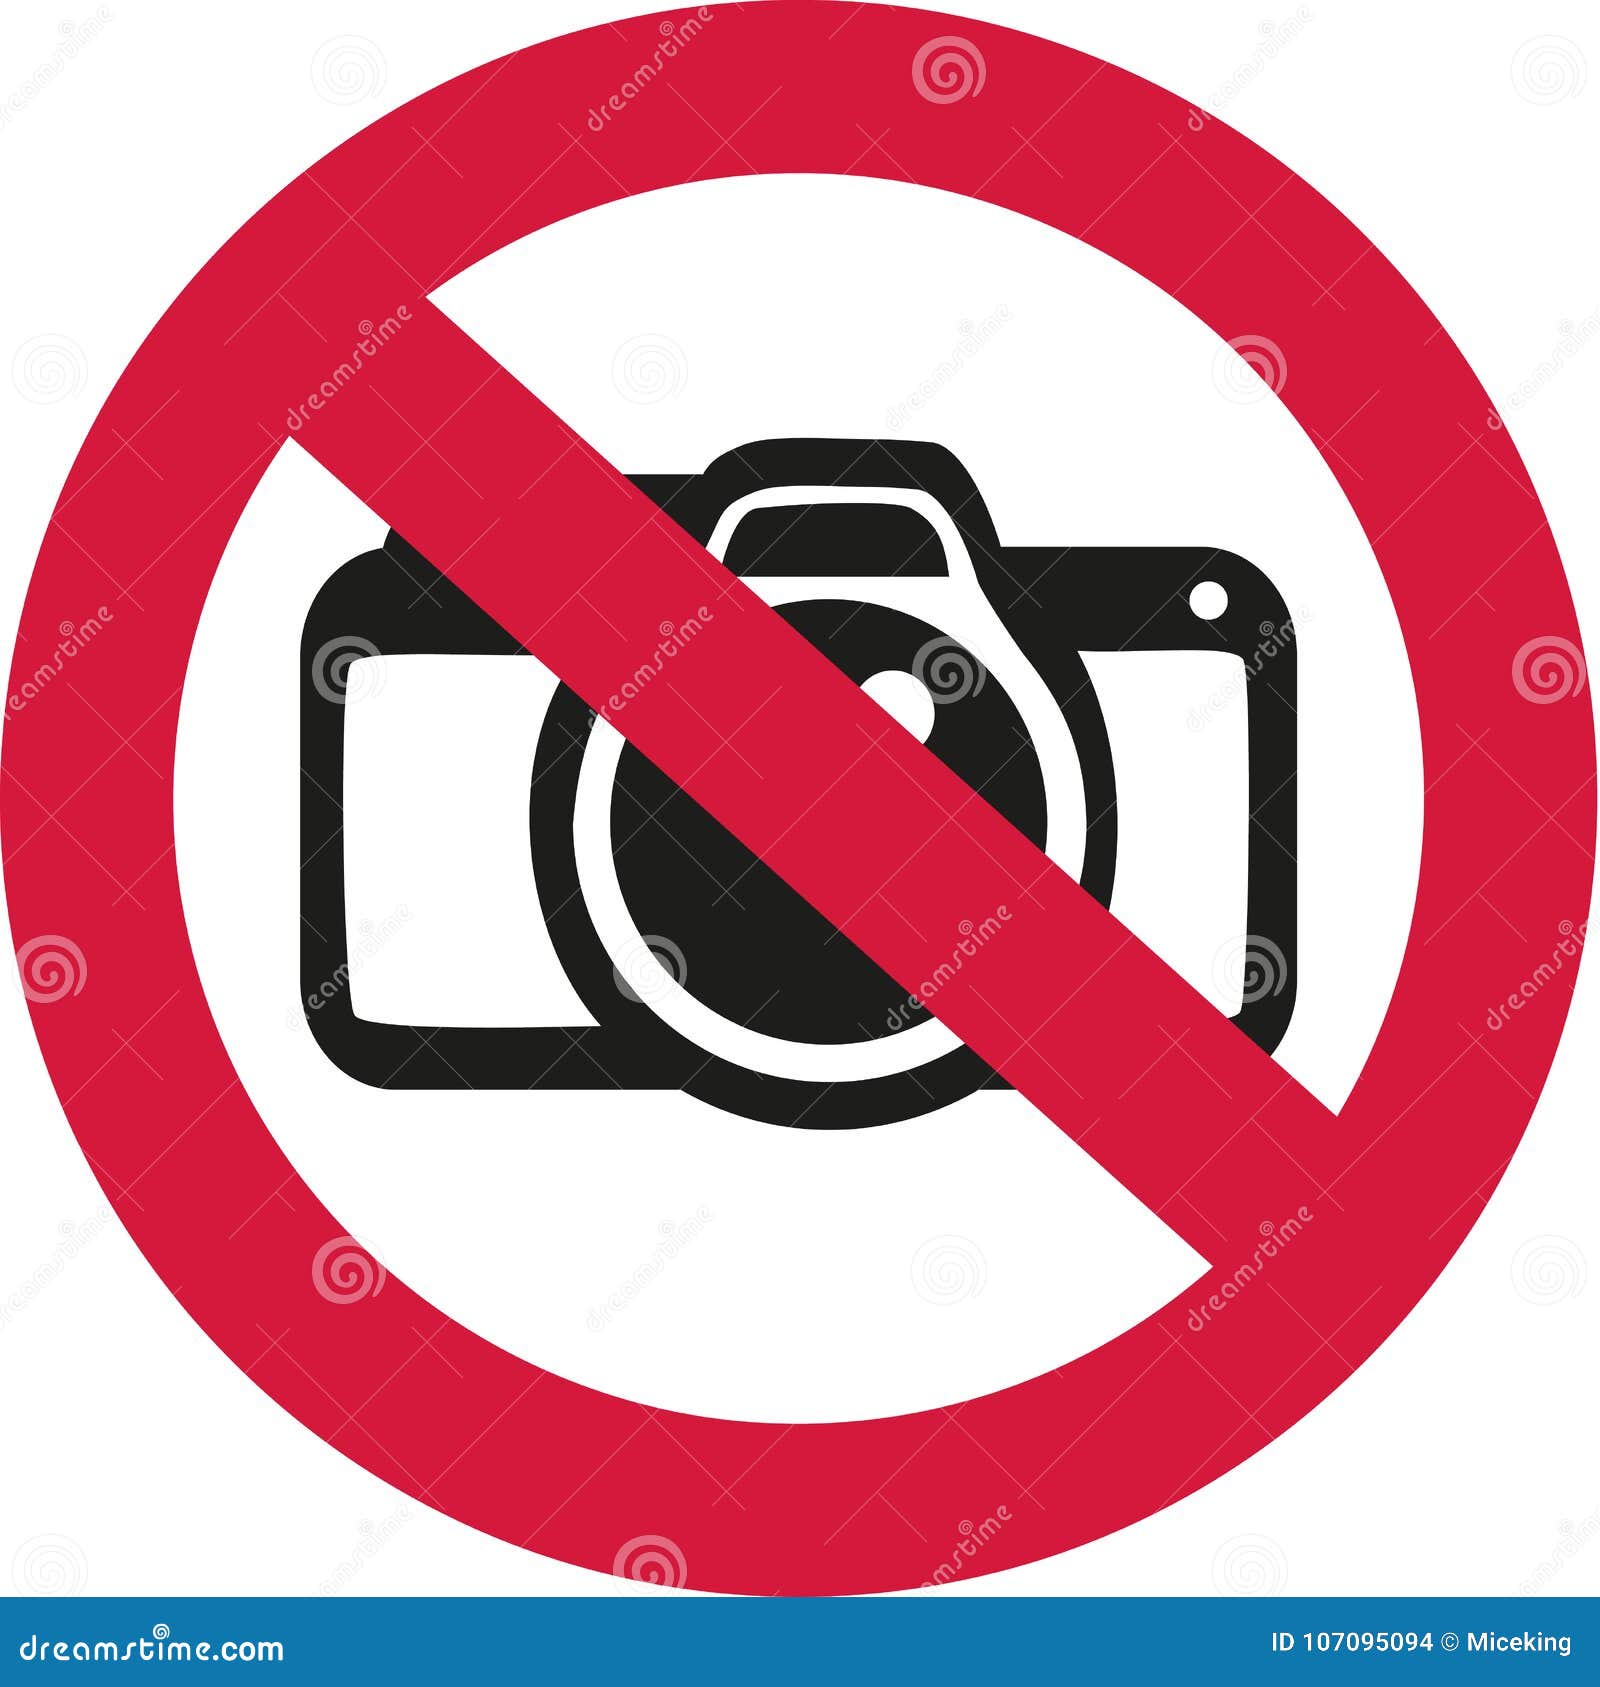 no photos allowed